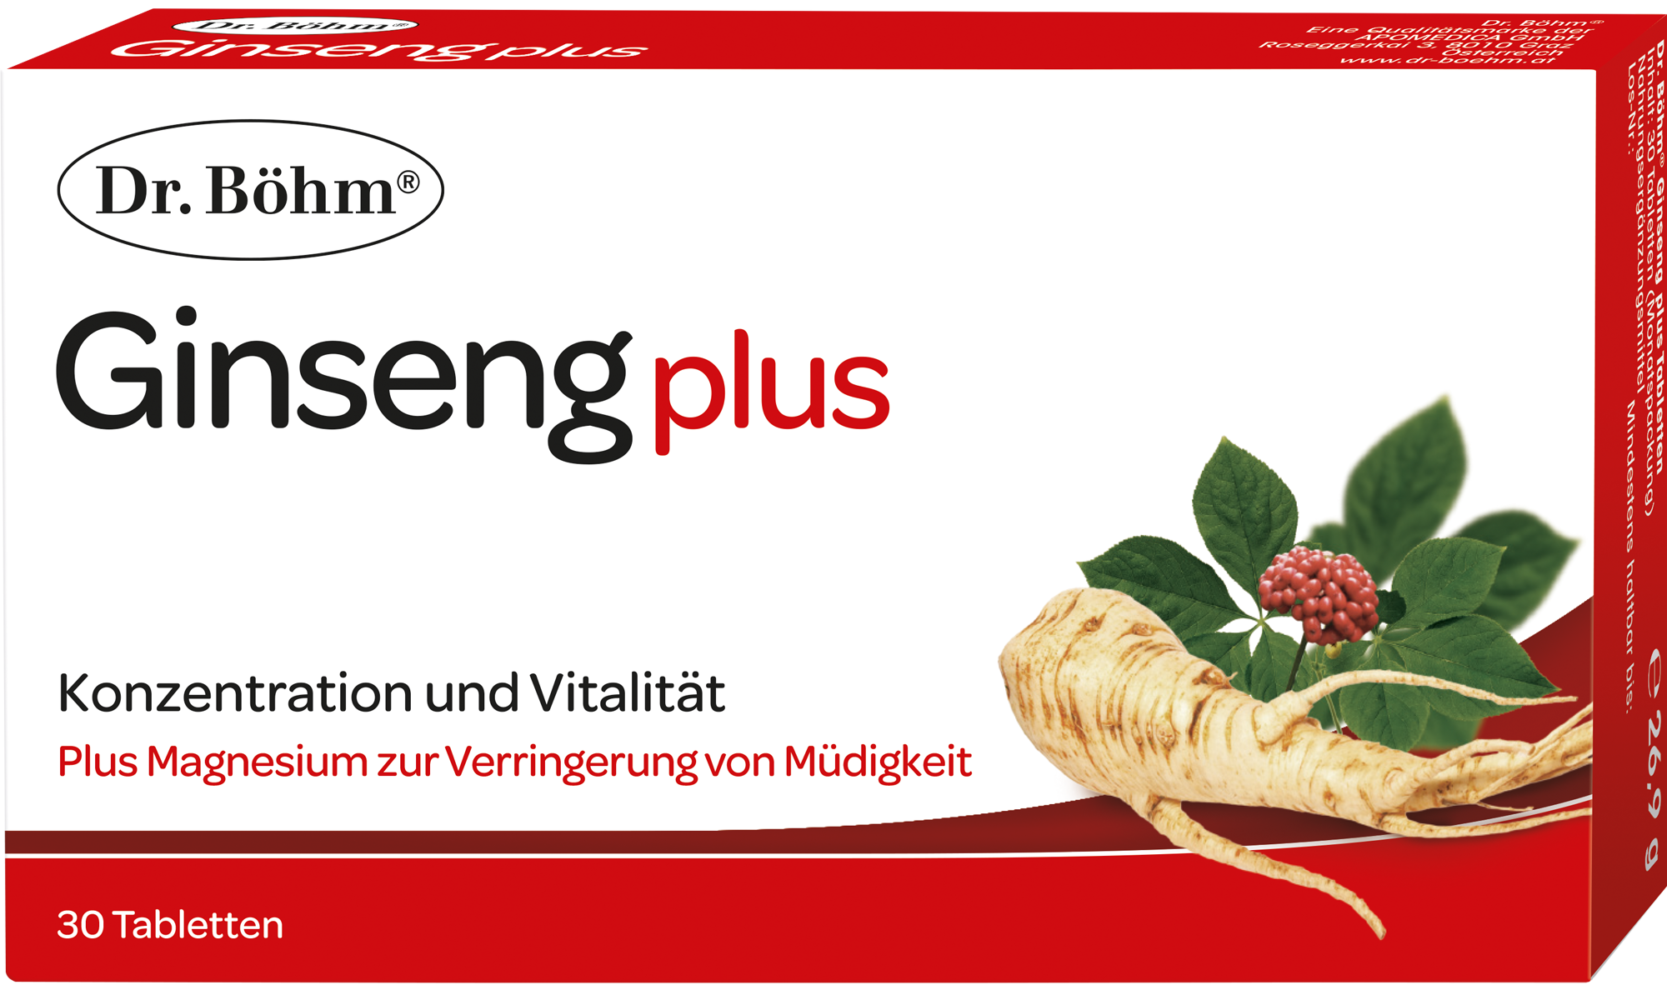 Dr. Böhm® Ginseng plus - Konzentration und Vitalität